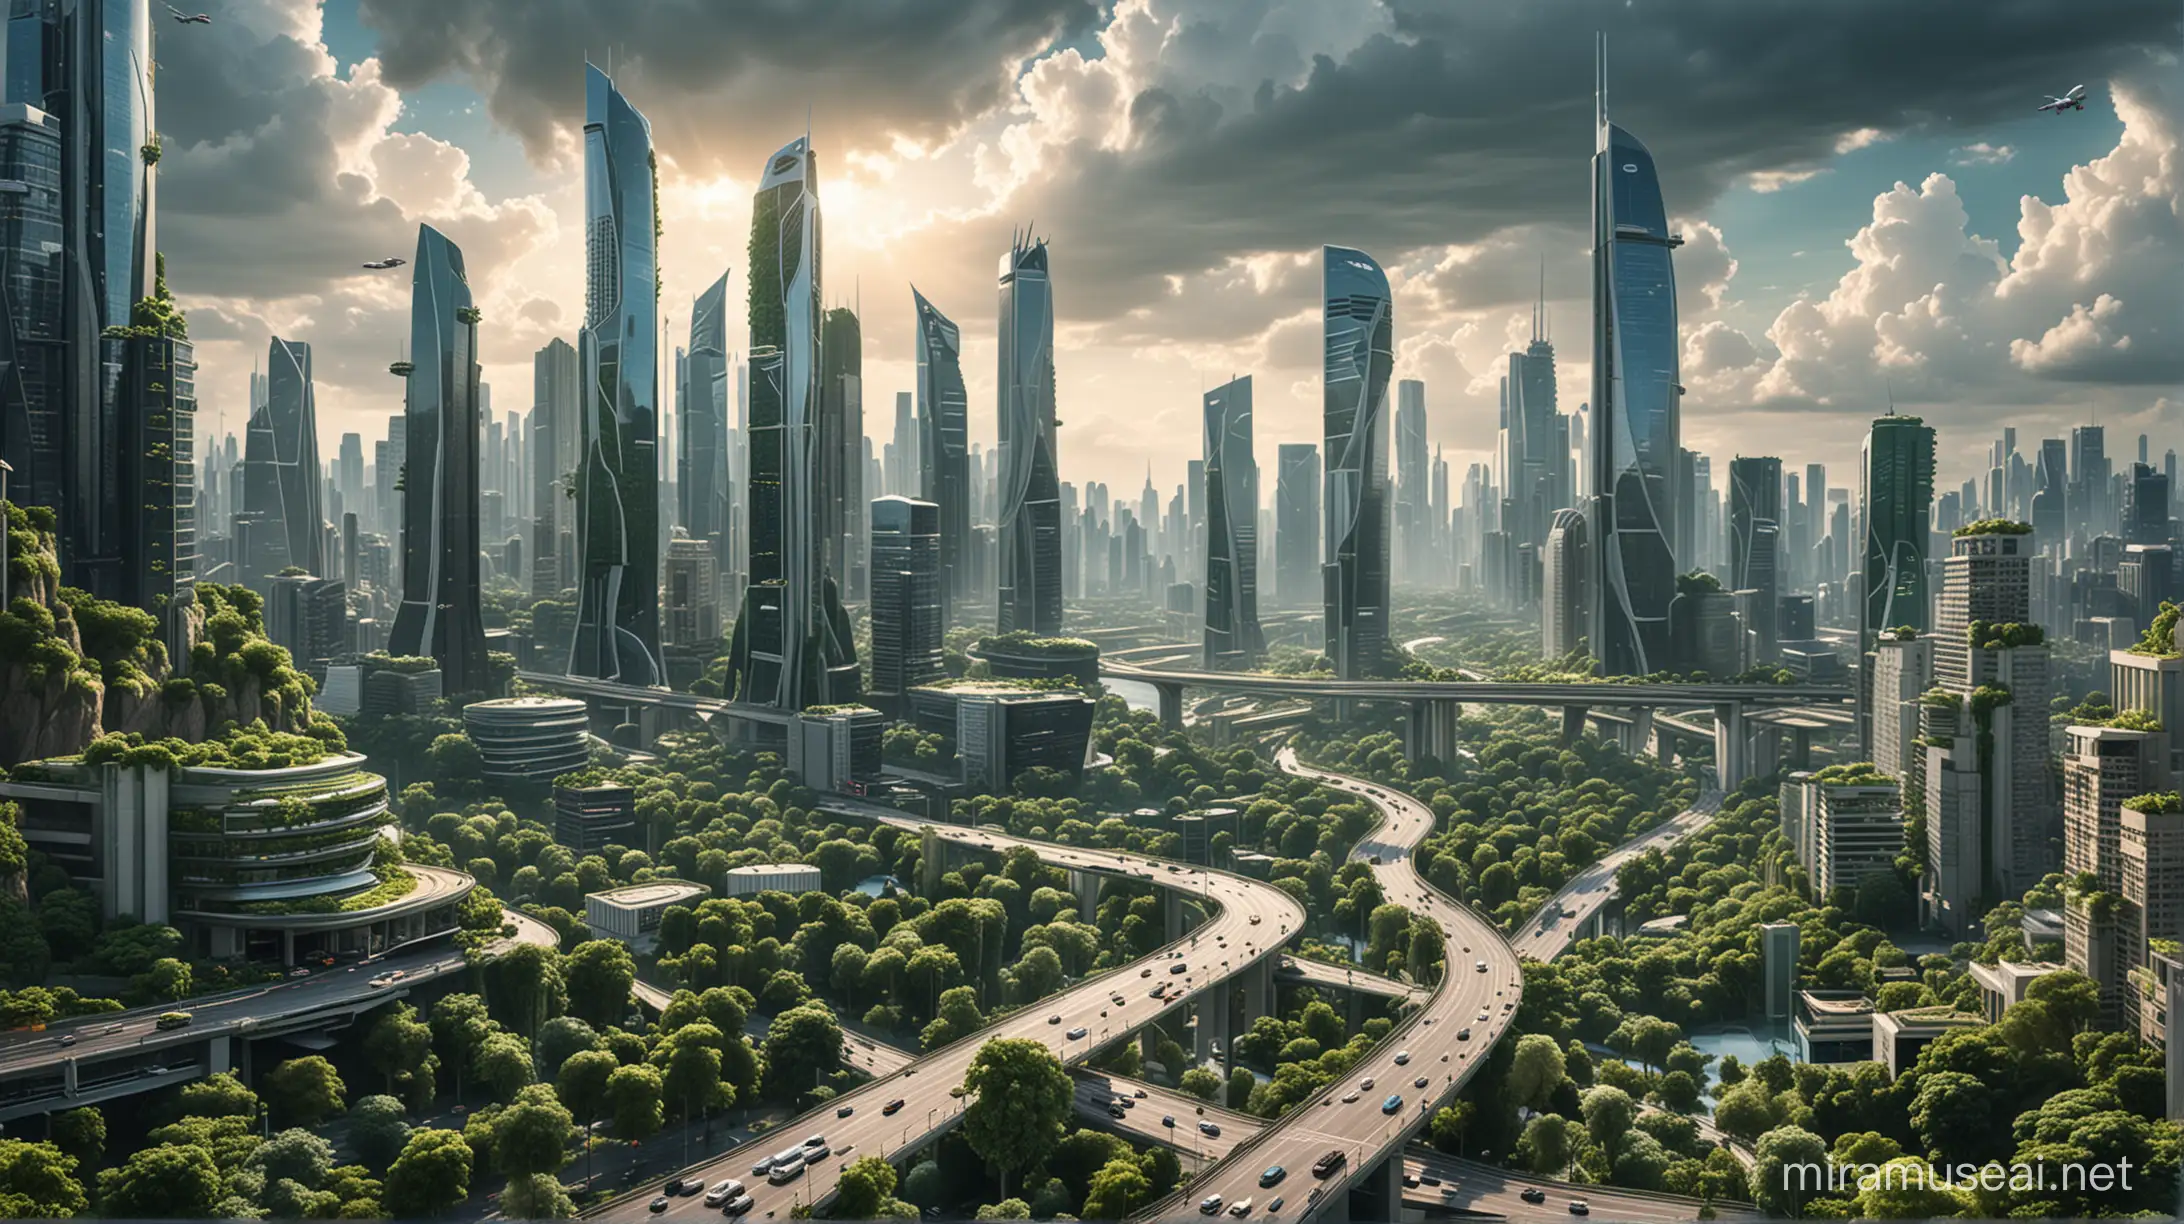 Foto realistis,gambar ini menampilkan kota medern di masa depan dengan gedung menjulang tinggi pencakar langit yang di tumbuhi popohan dan dedahunan hijau serta menampilkan kota yang berumur jutaan taun,serta transportasi dan jalan terbang,jalan modern,yang menampilkan estatik